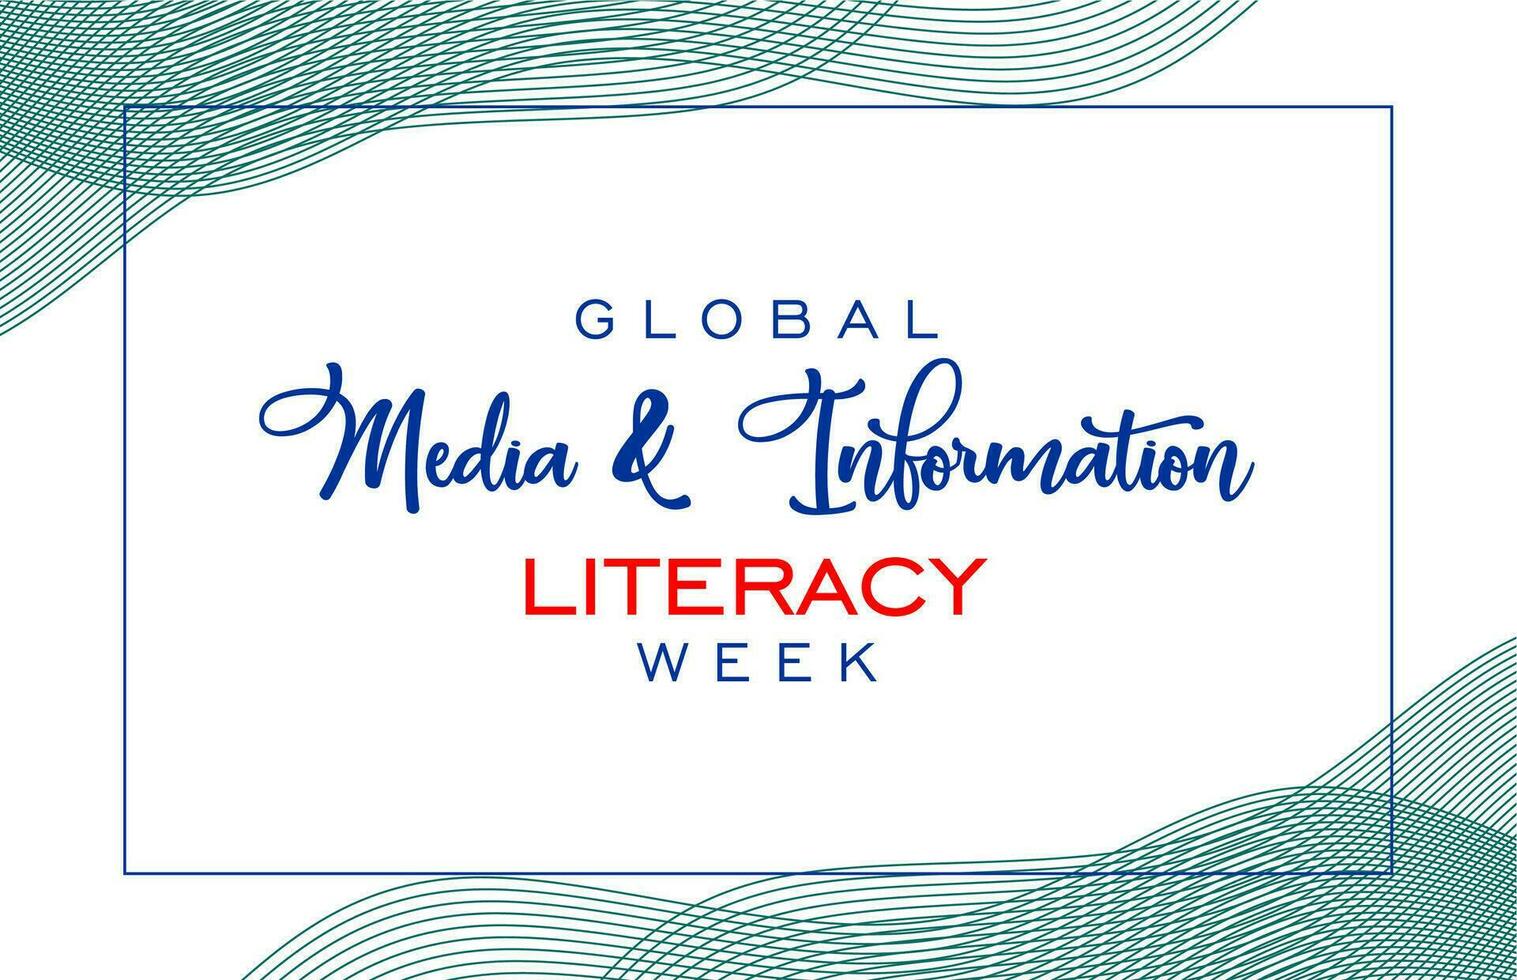 globale media e informazione alfabetizzazione settimana vettore